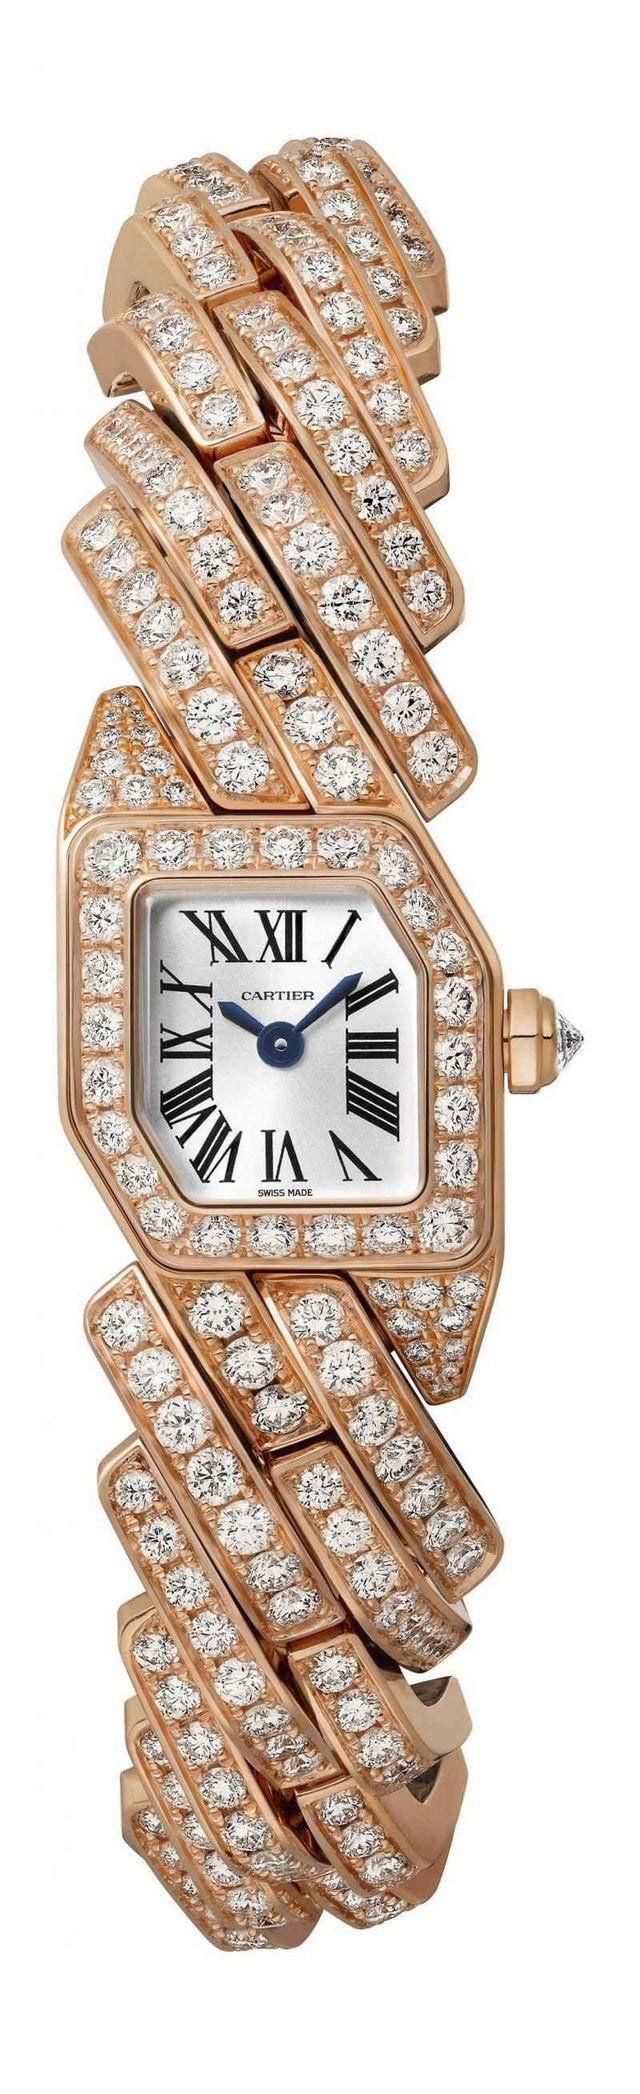 Cartier Maillon de Cartier Woman's watch WJBJ0004